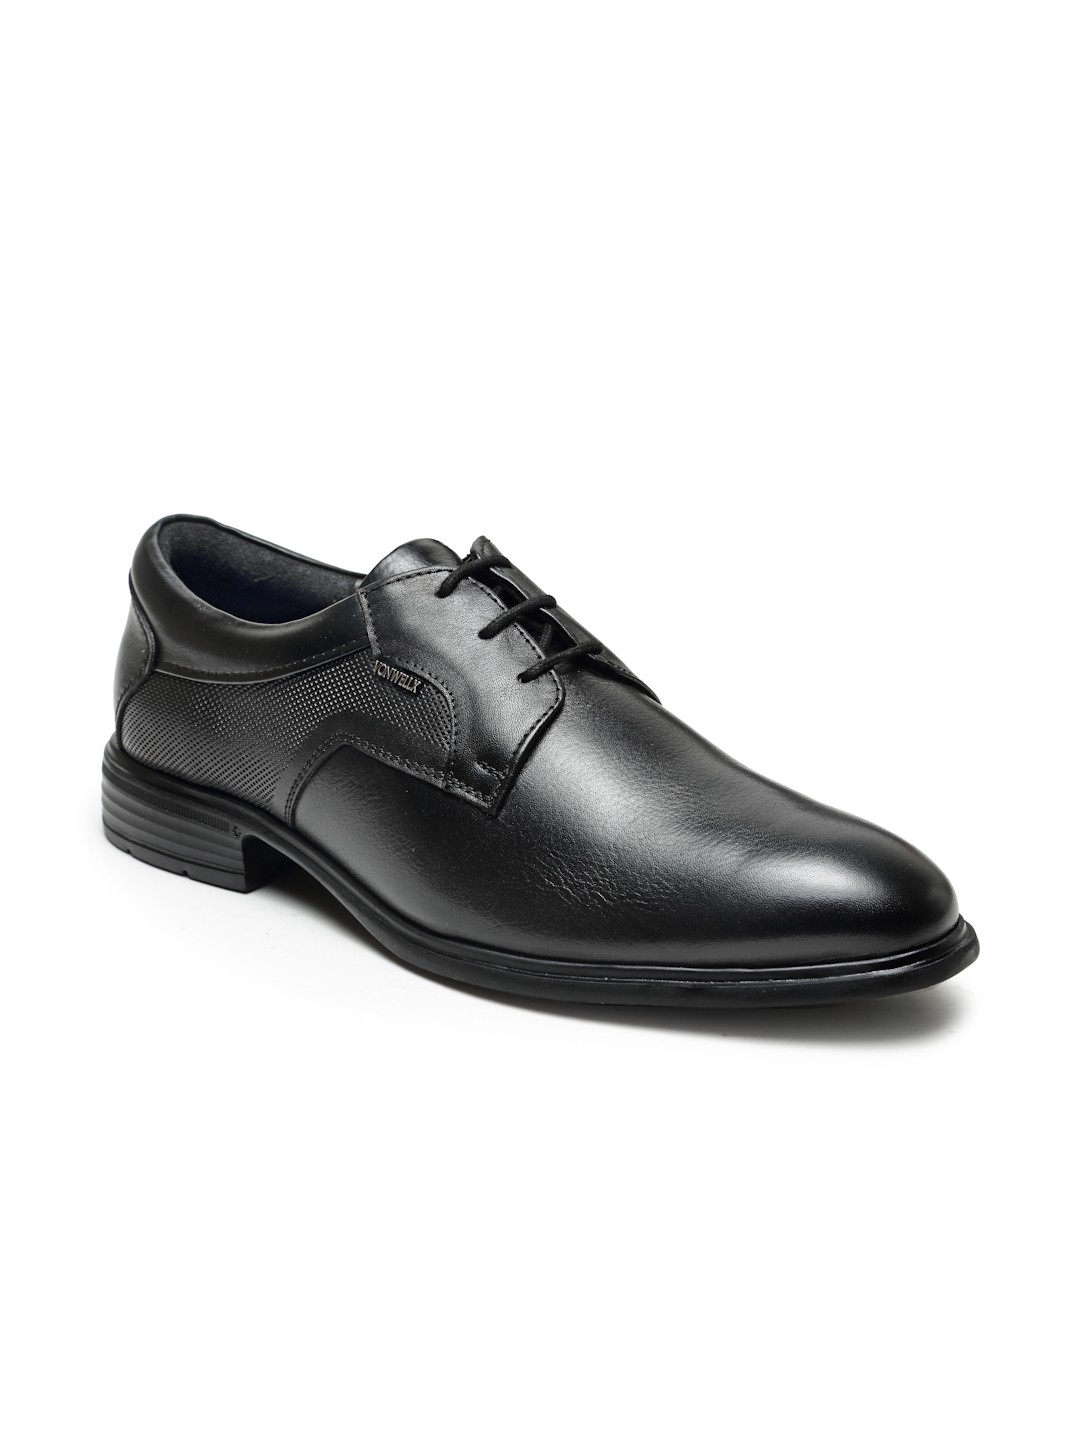 Buy Von Wellx Germany Comfort Men's Black Formal Shoes Adler Online in Dehradun